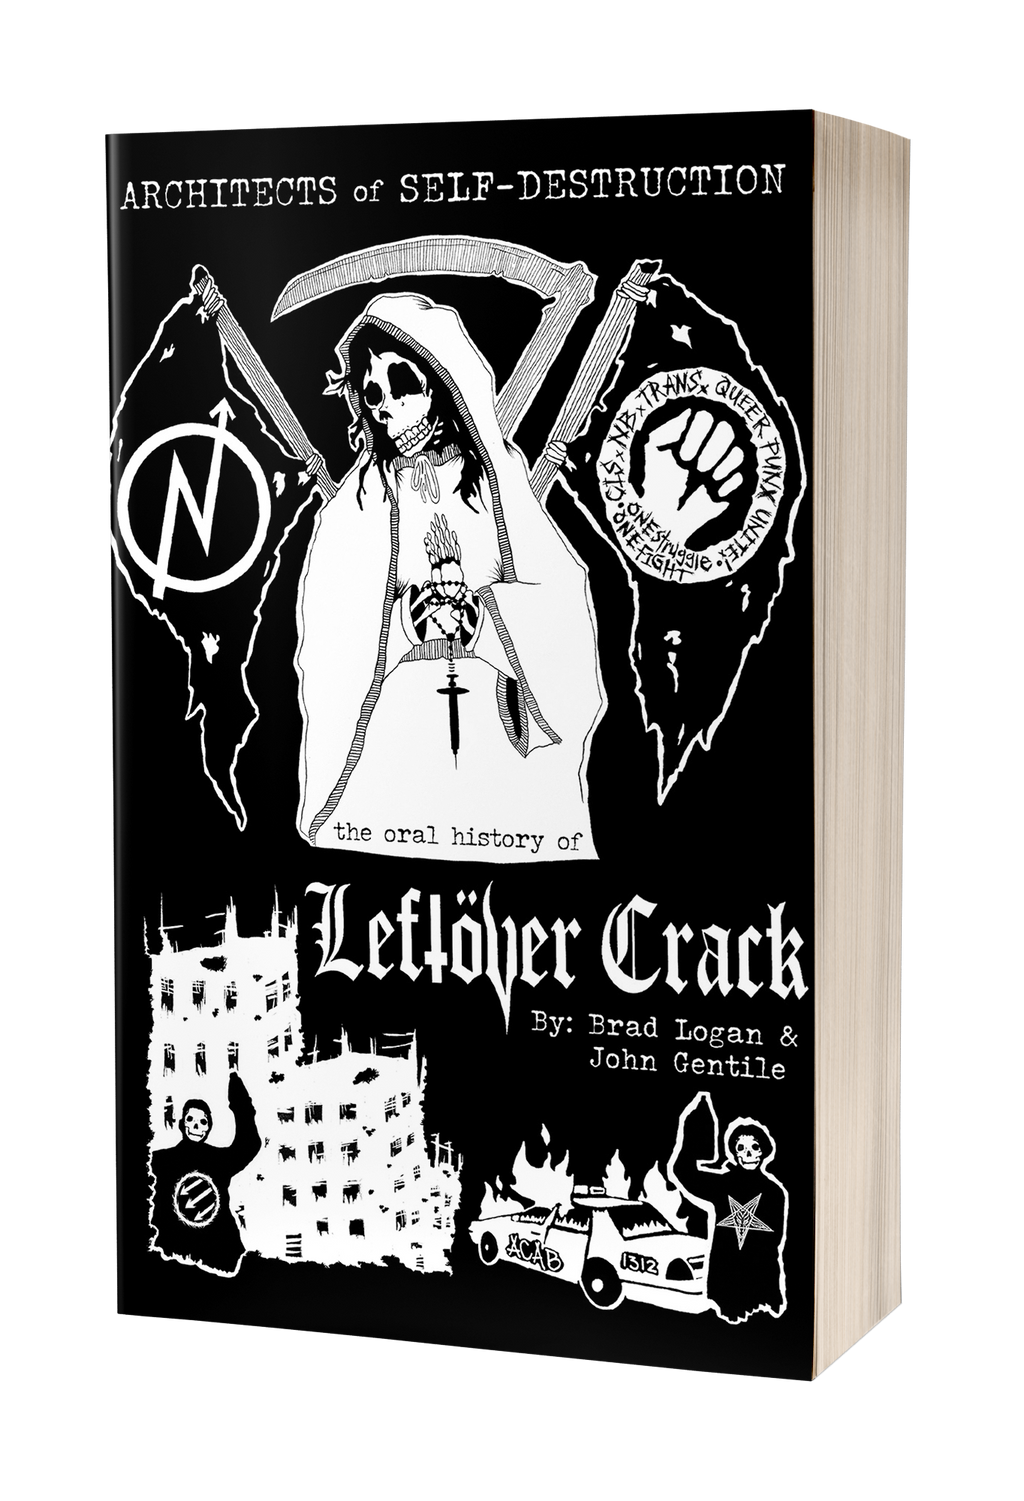 Leftover Crack Signed Book